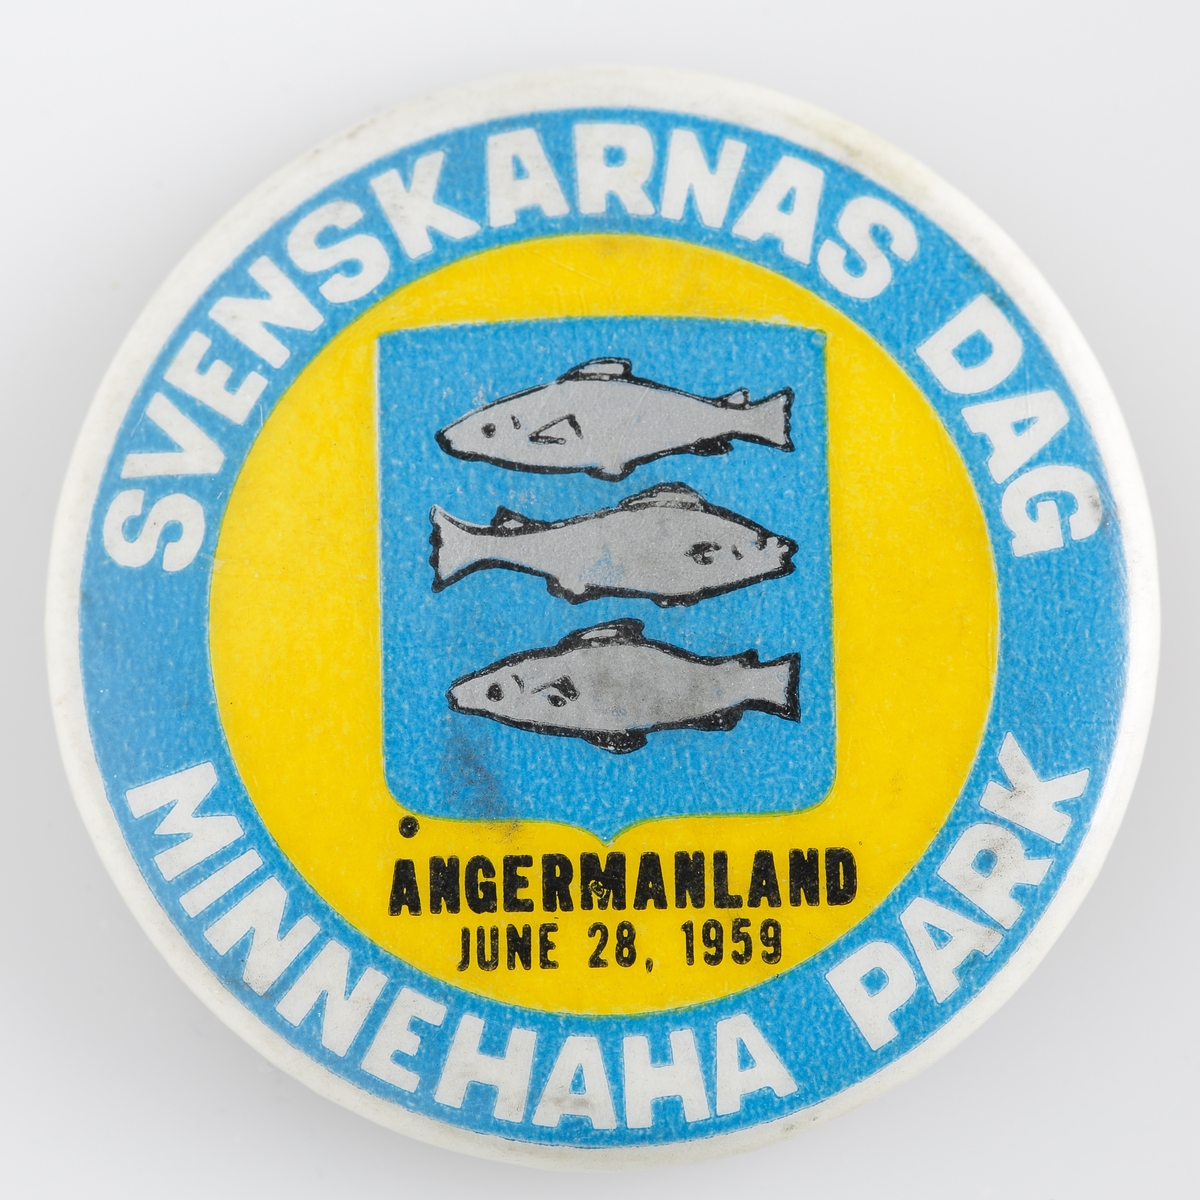 Nålmärke "Svenskarnas dag Minnehaha Park" från år 1959 och med Ångermanlands länsvapen.